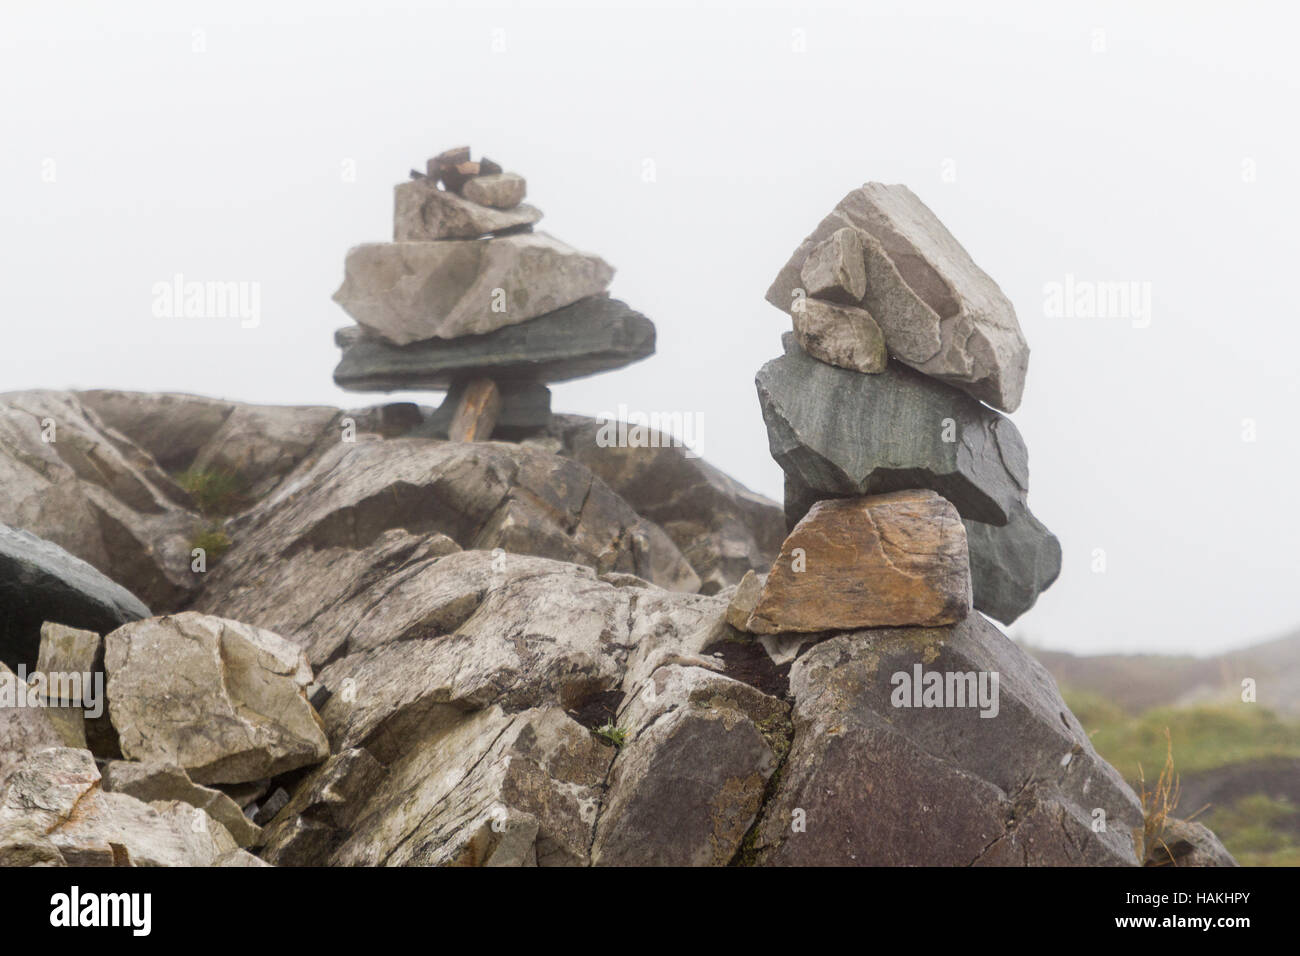 Mojón de piedras apiladas o marcar un camino en la niebla. Foto de stock